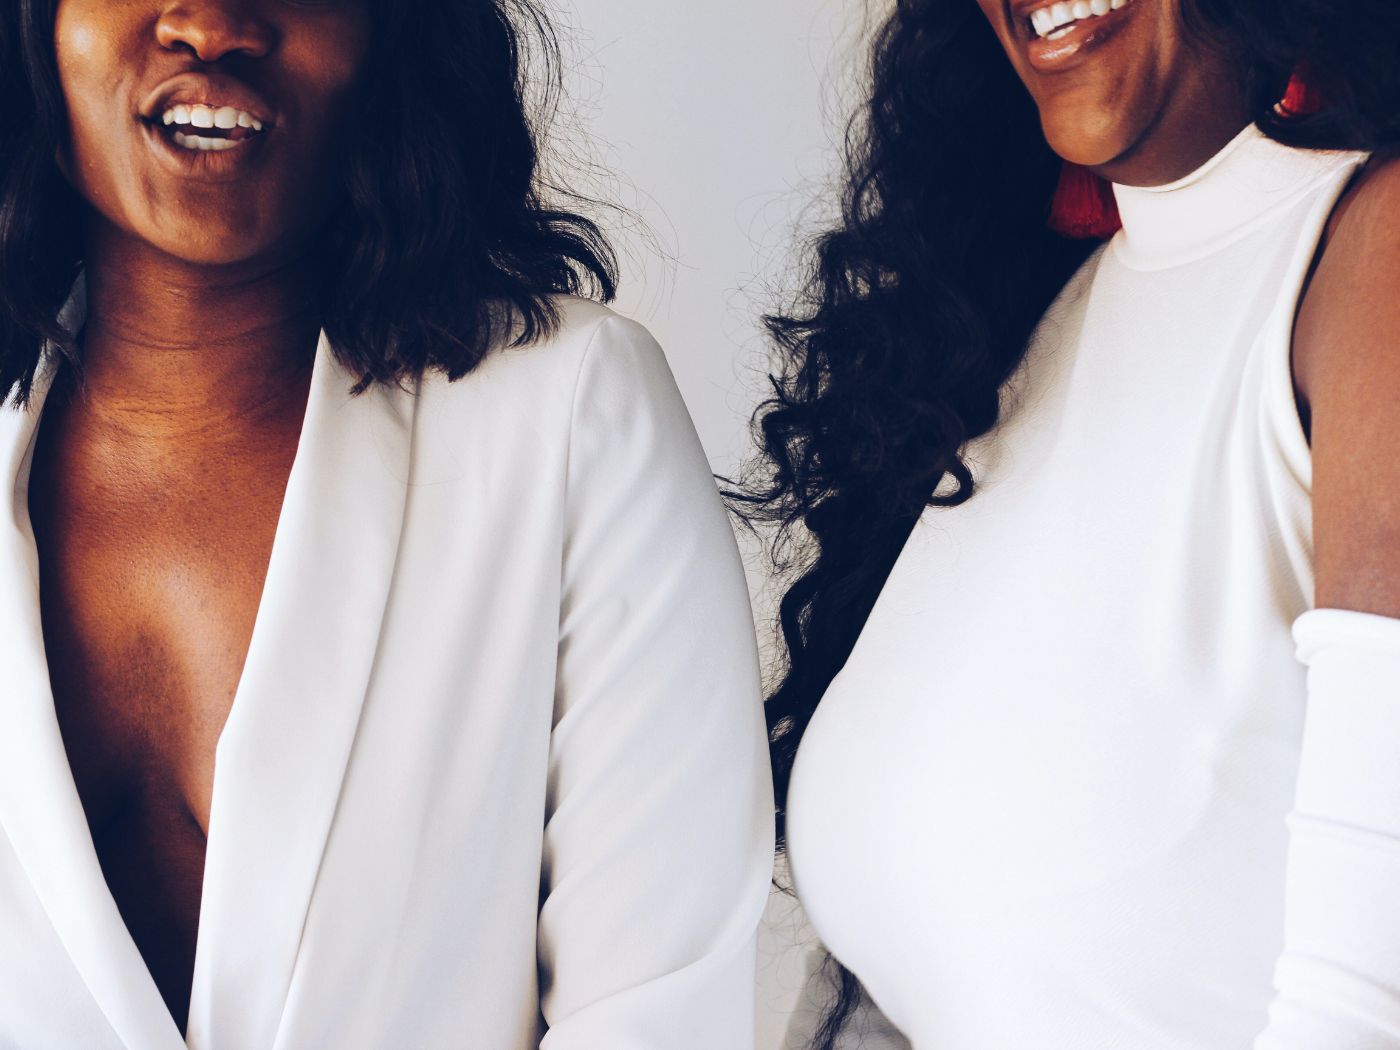 Two black women talking